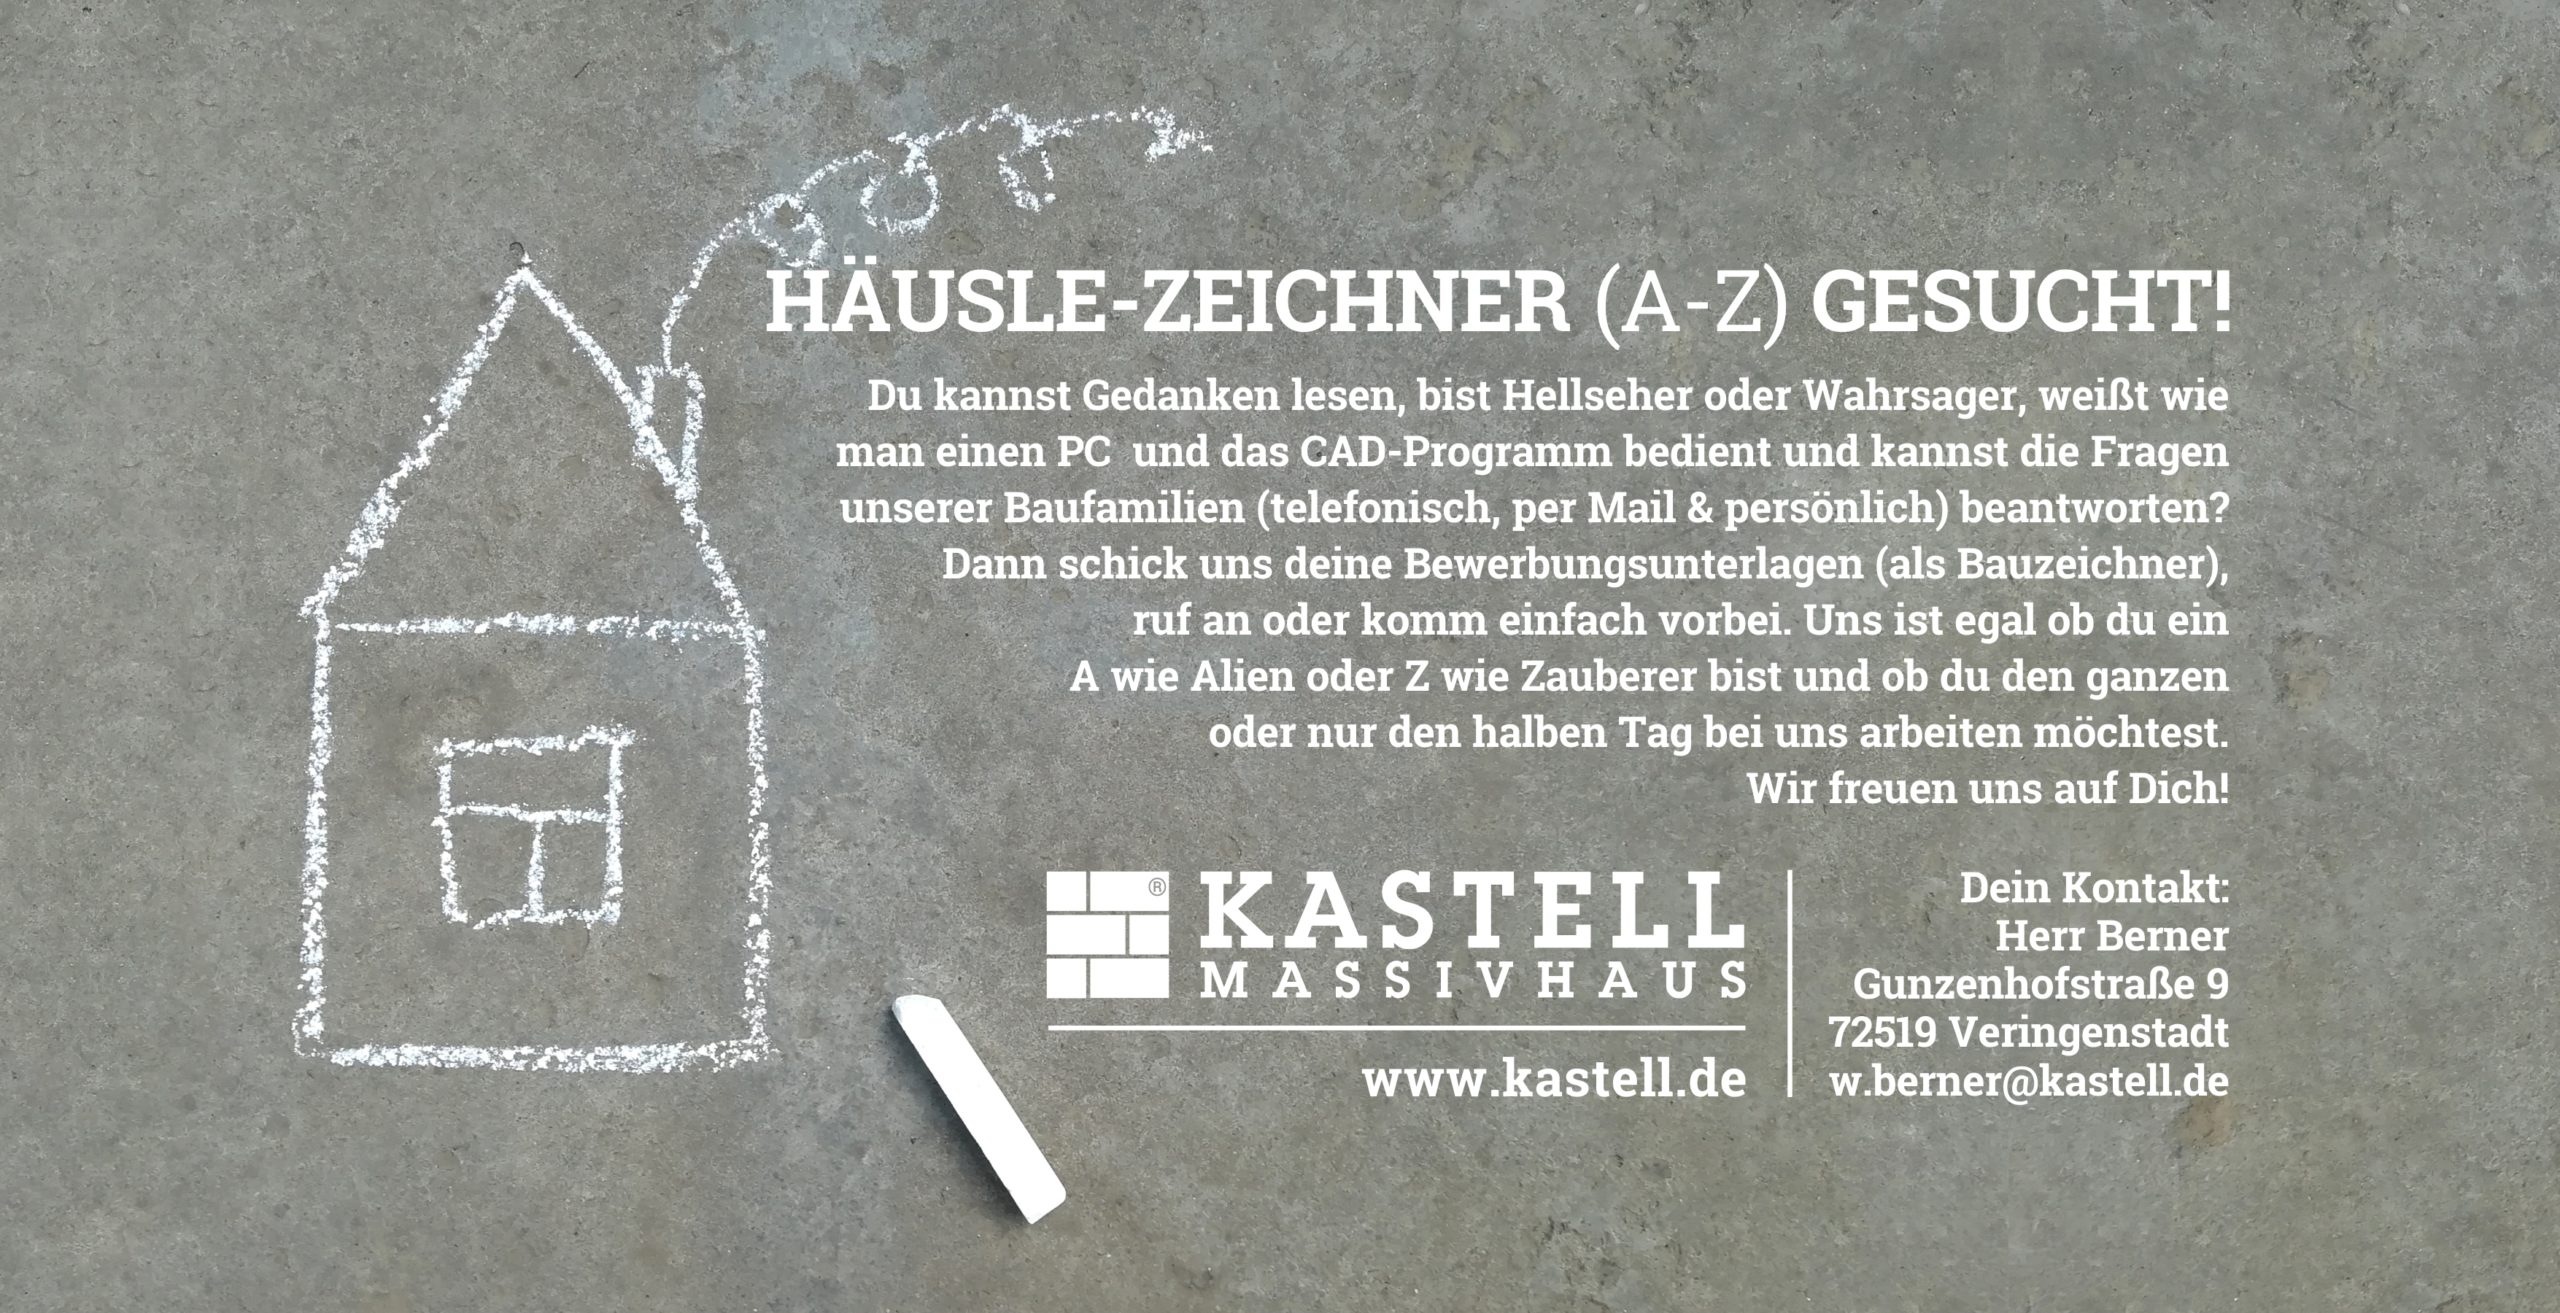 Kastell Massivhaus_Bauzeichner